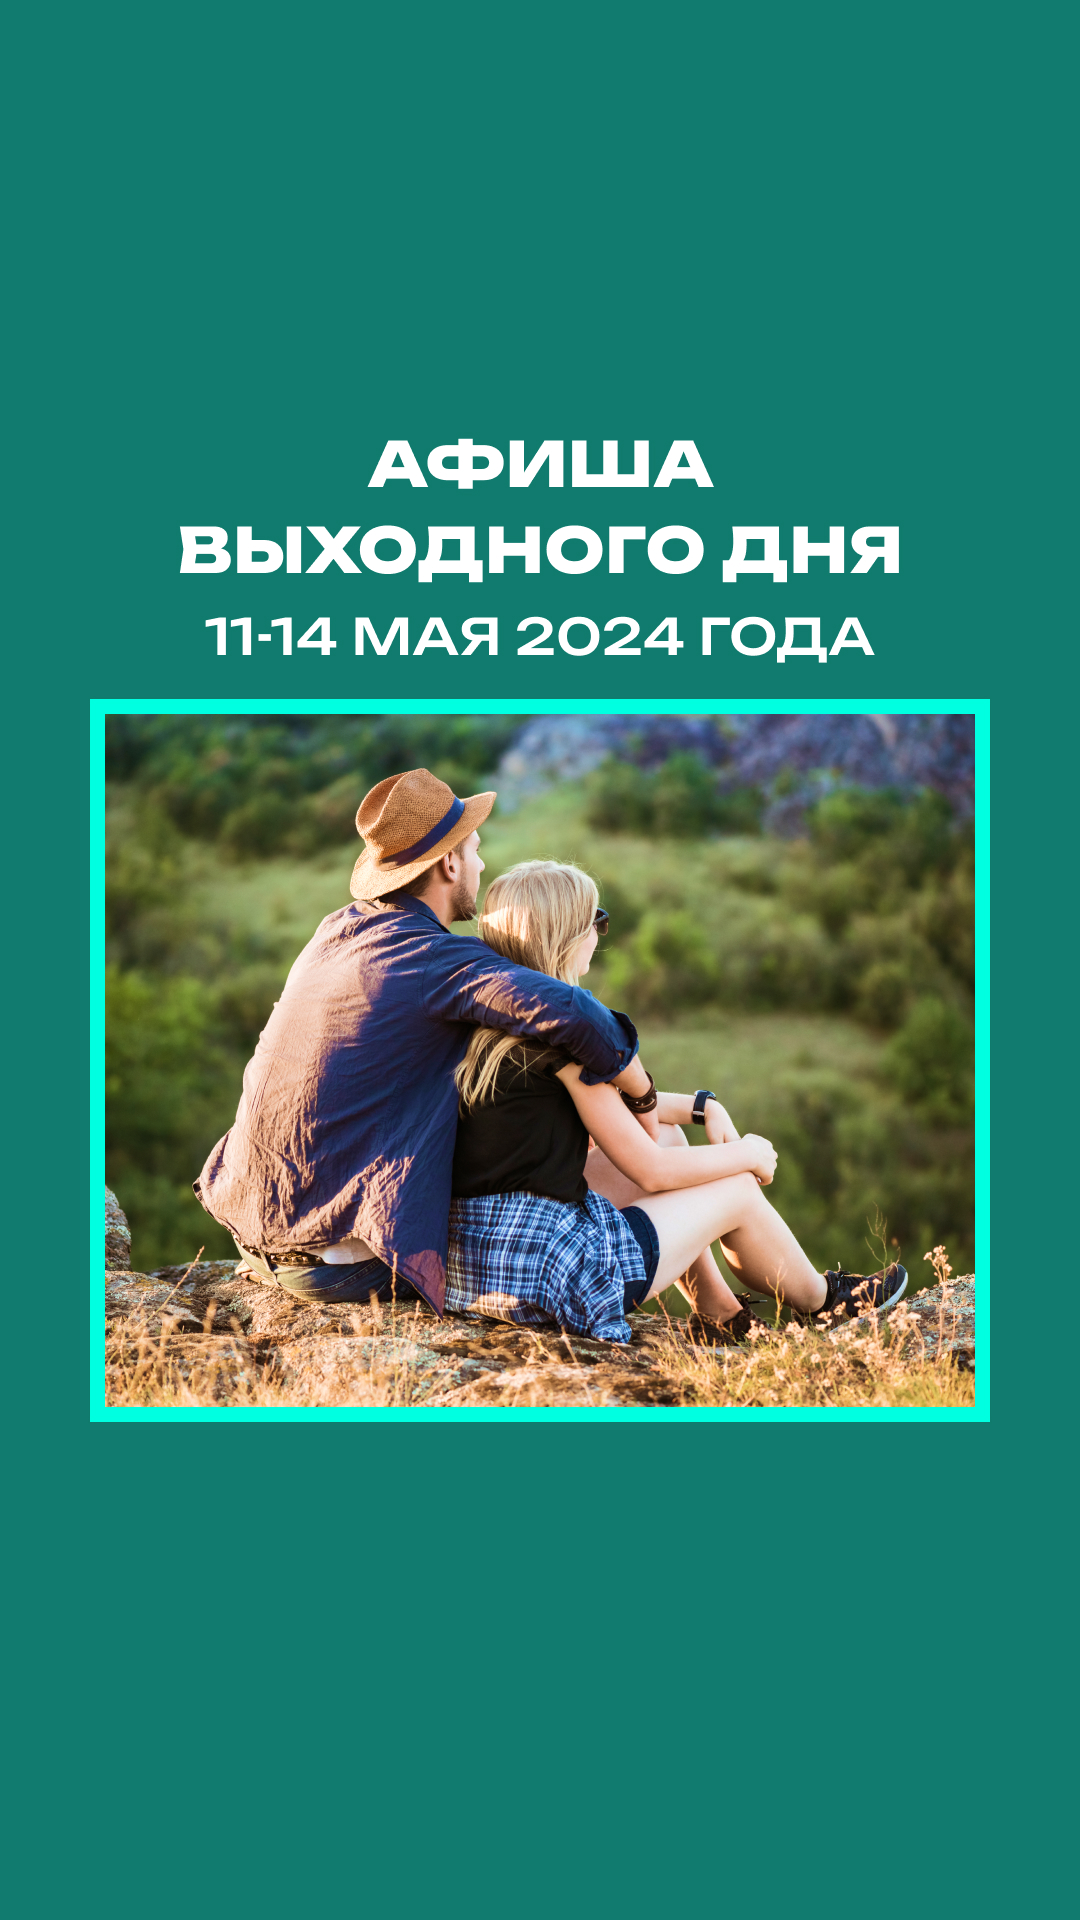 Афиша мероприятий на 11-14 мая #познайбеларусь #афишавыходногодня #майскиепраздники